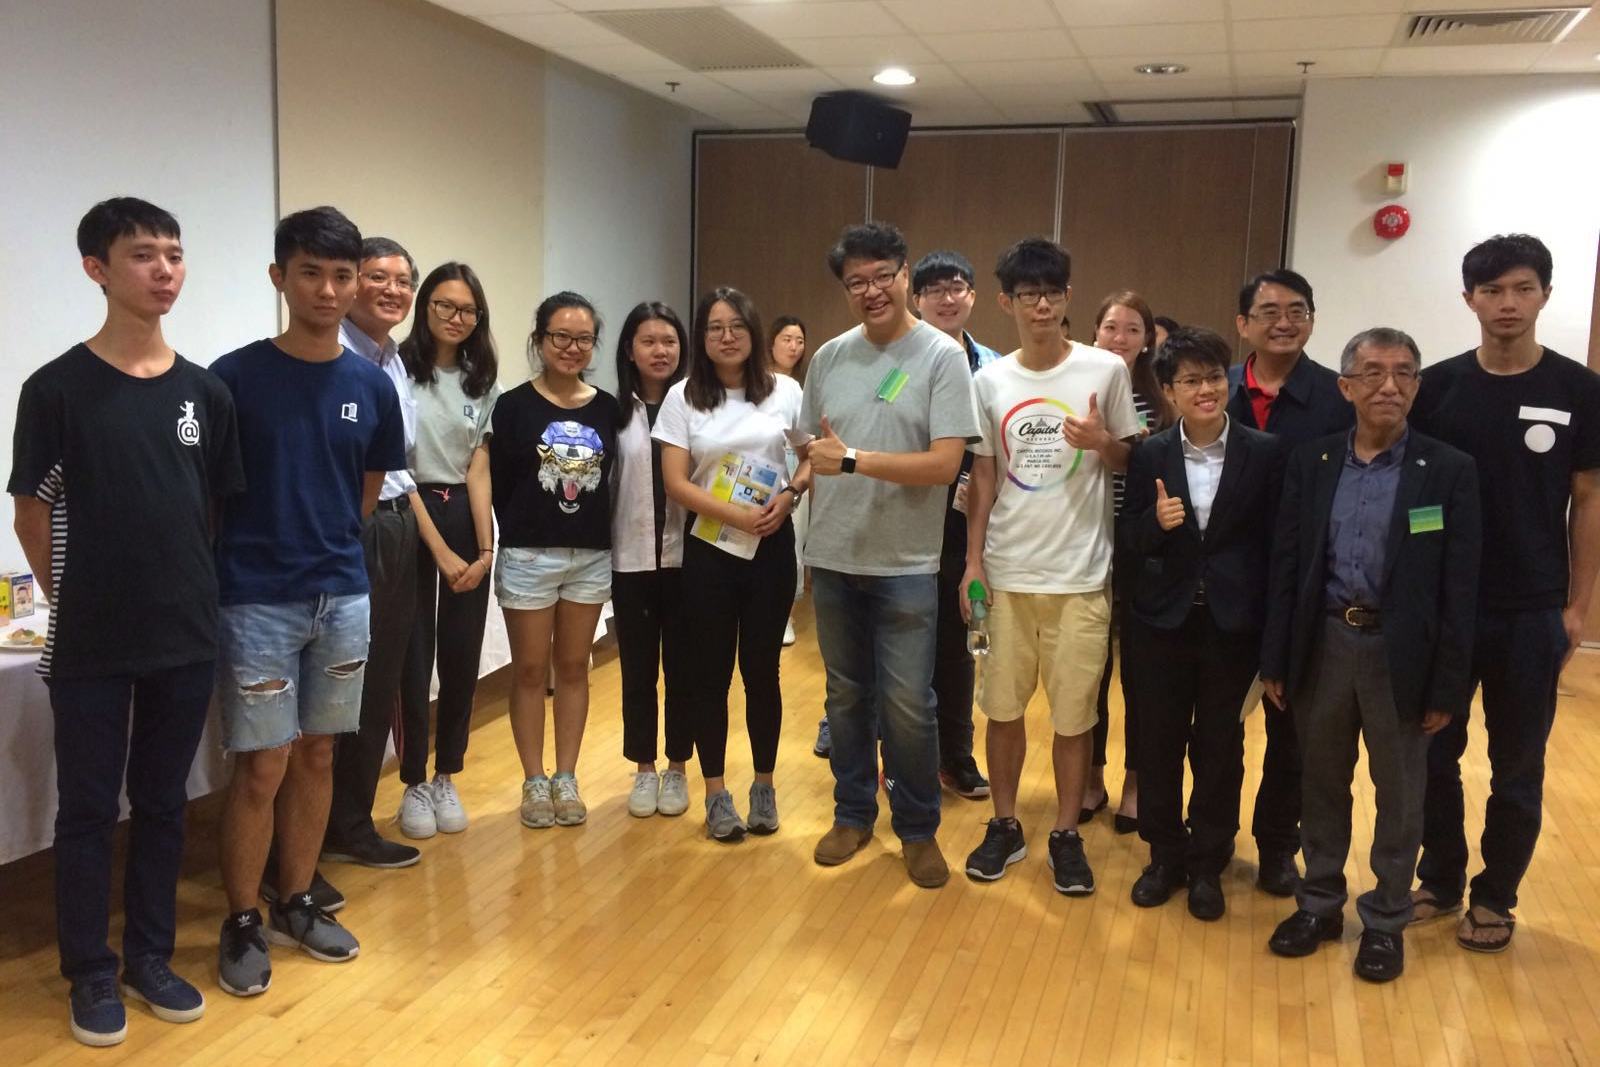 香港信息科技商会会长黄岳永先生，邀请国际学院师生参观旗下Virtual Reality技术研发实验室，商讨创业培训计划（Entrepreneurship Training Programme）合作事宜。